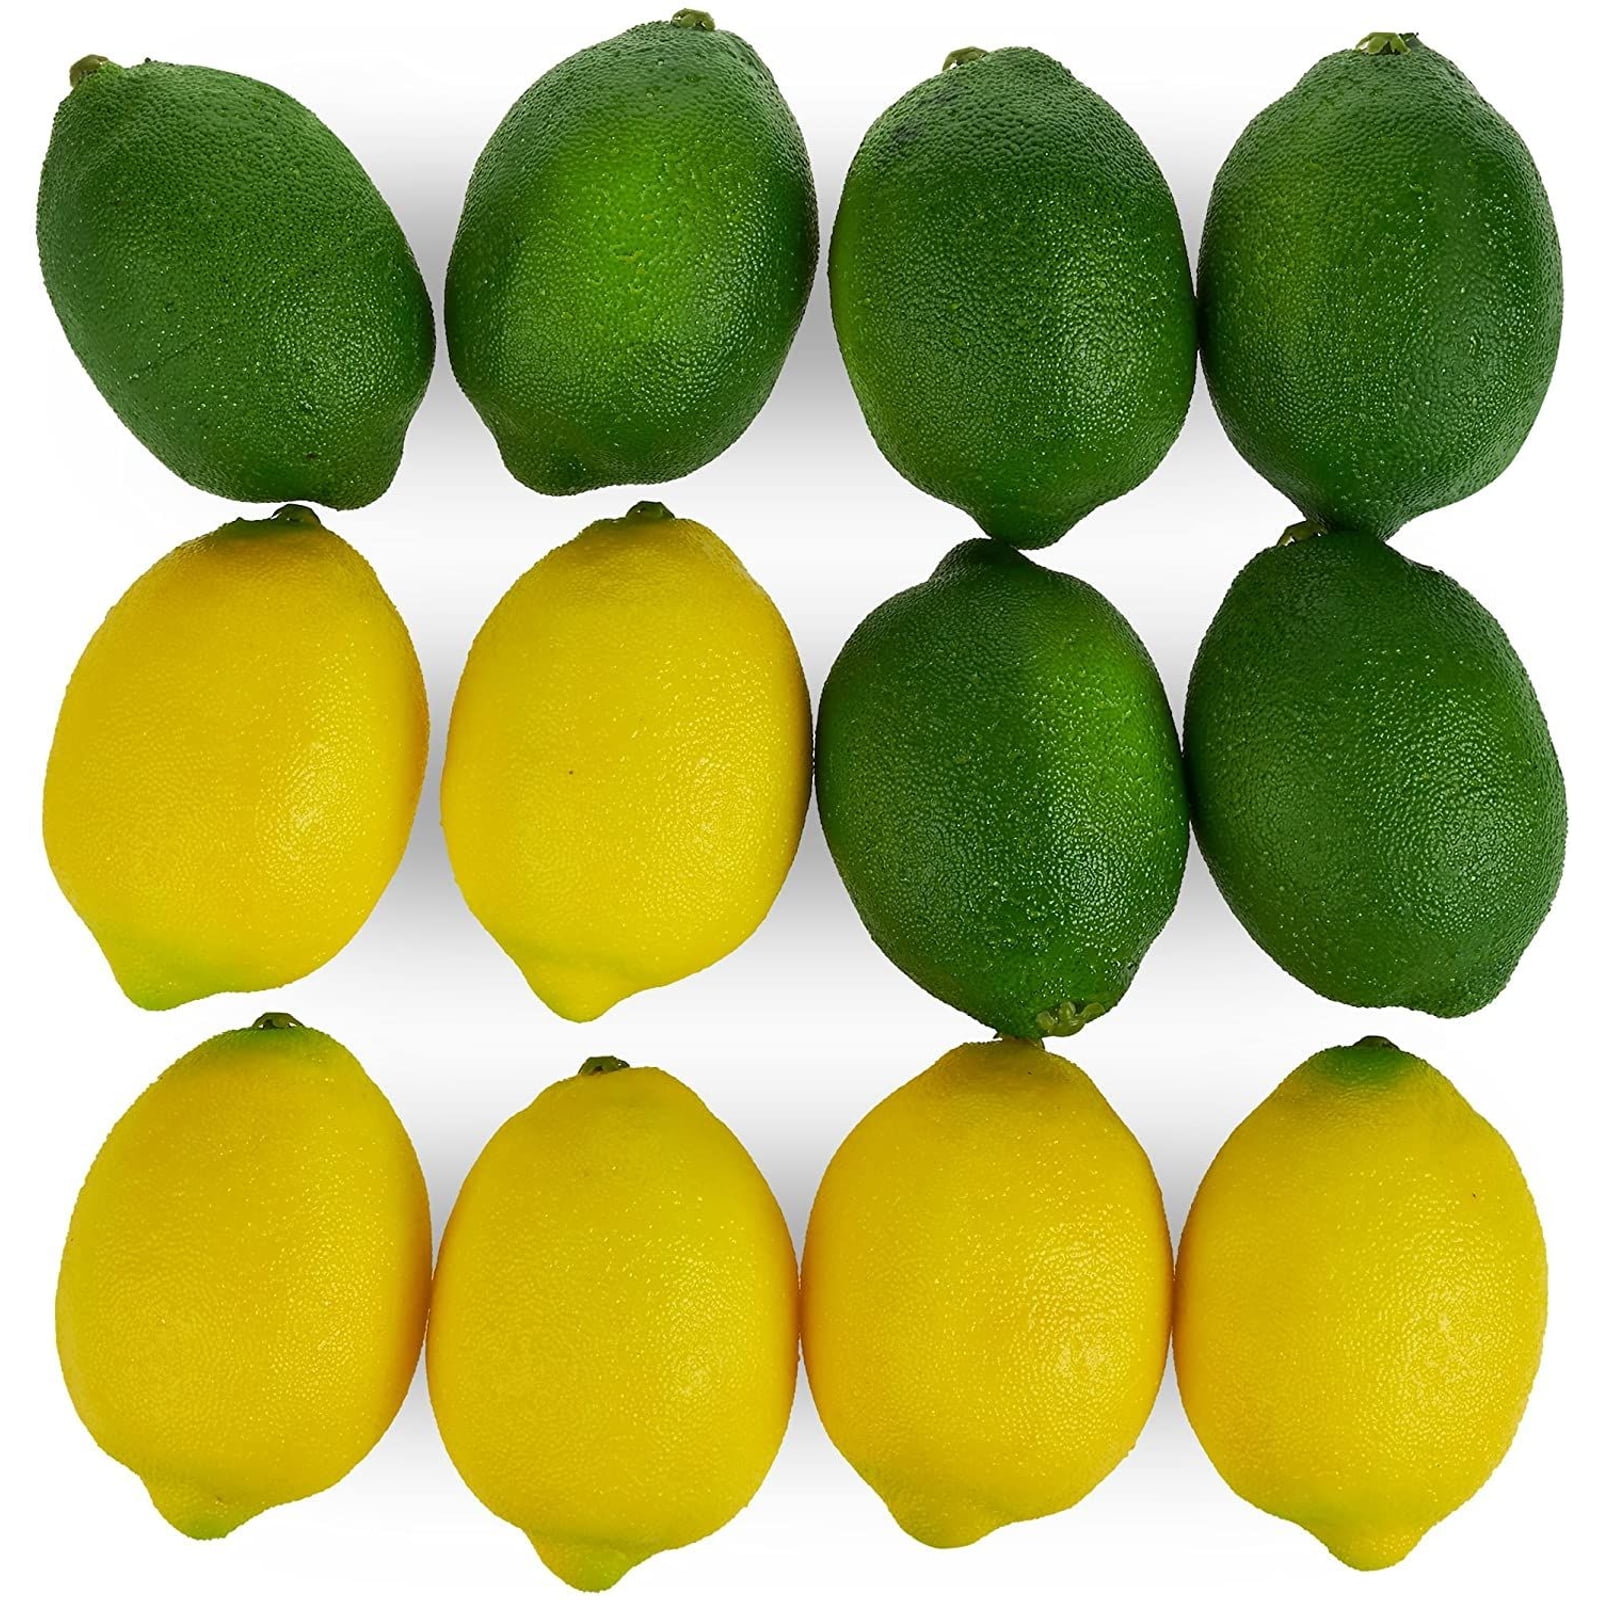 10 PCS Faux Limes Lemons Home Decorative Foam Artificial Fruit Imitation Fake Uk